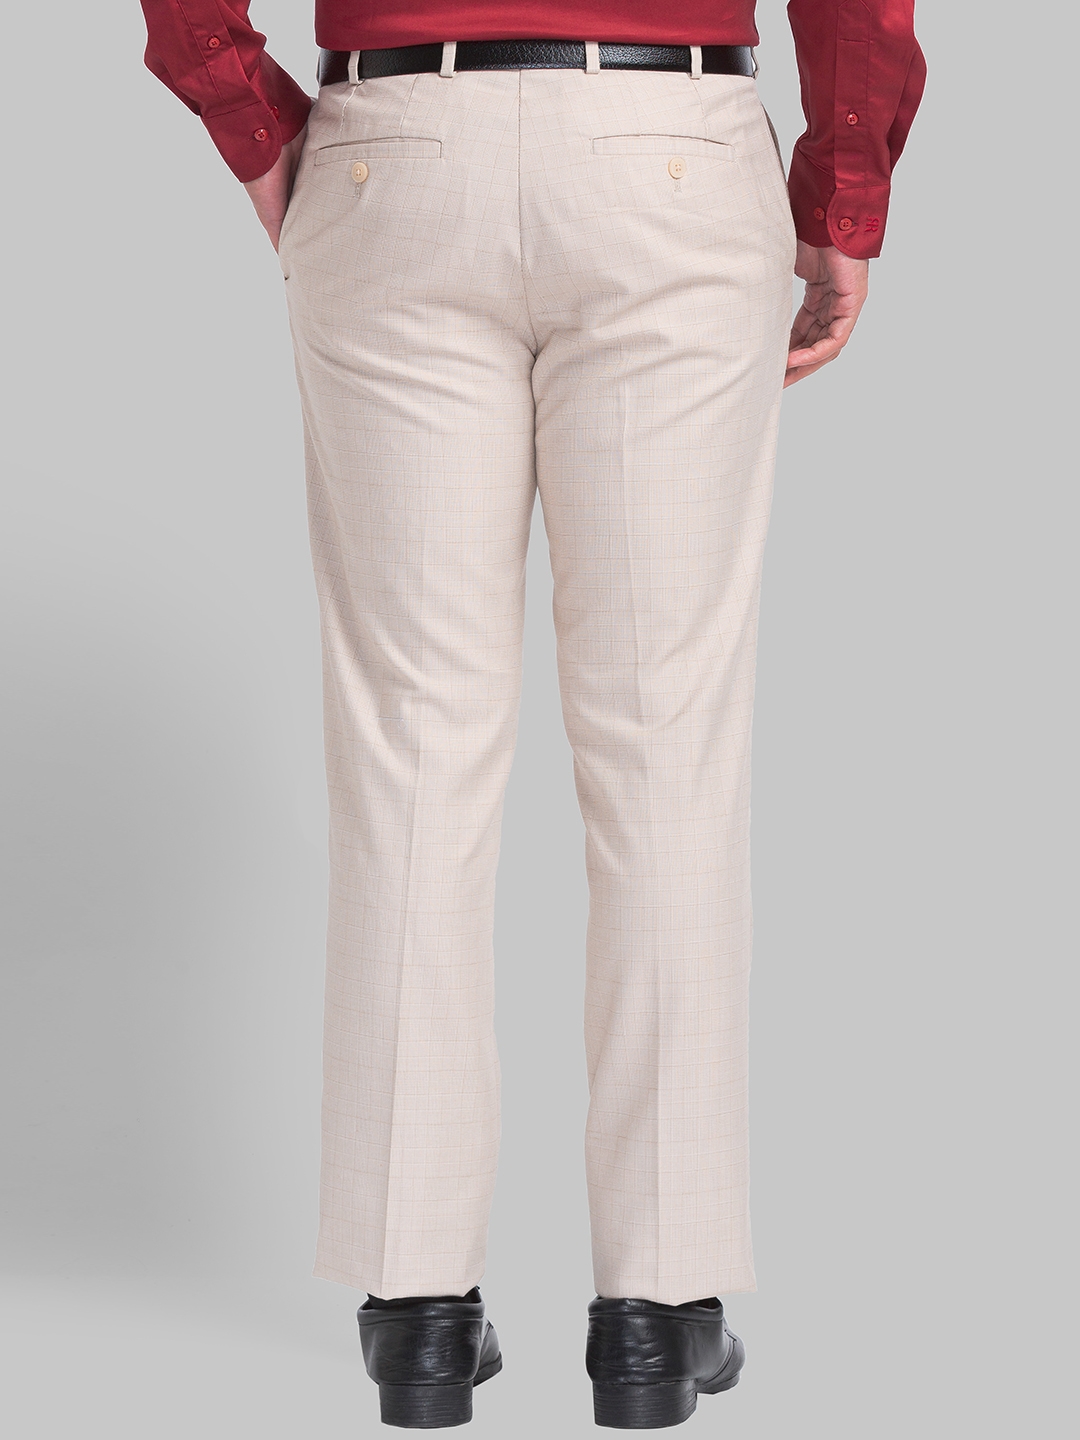 Raymond Relaxed Men White Trousers  Buy Raymond Relaxed Men White Trousers  Online at Best Prices in India  Flipkartcom